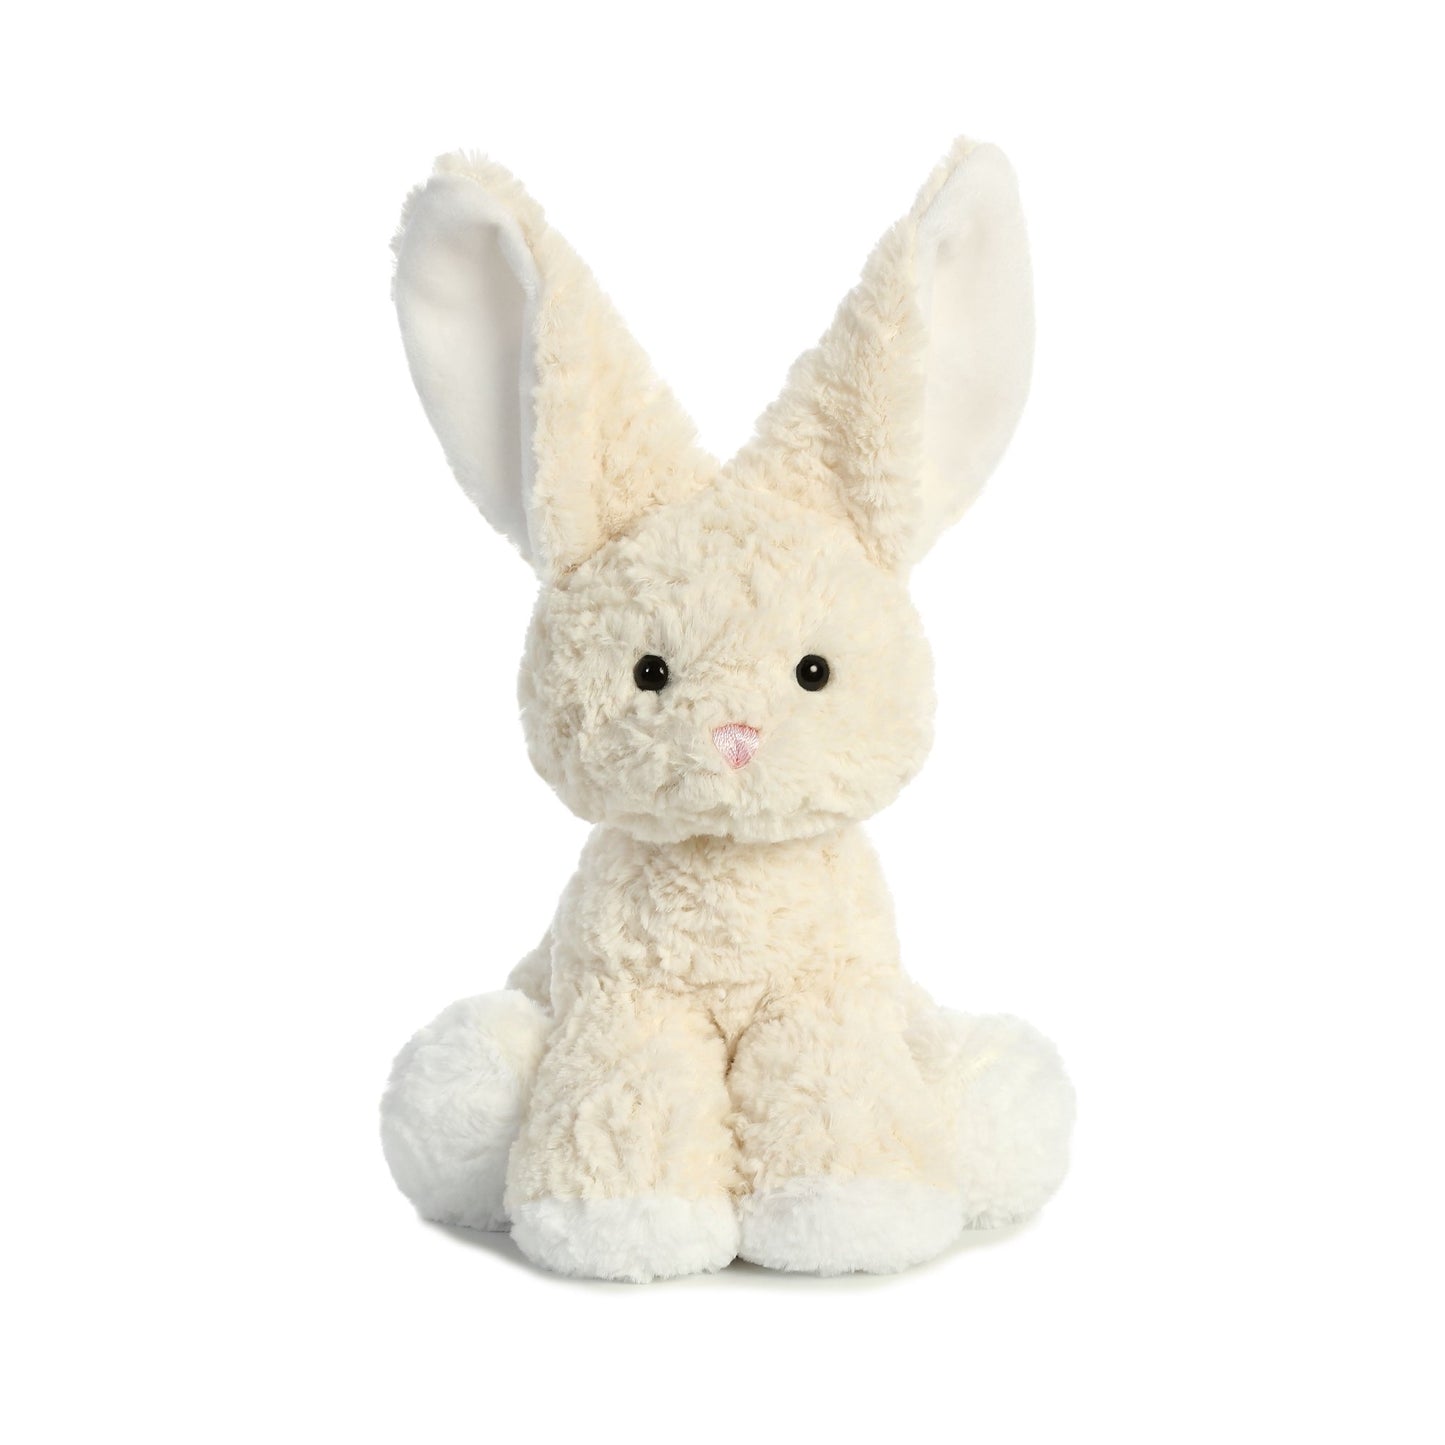 Aurora Oatmeal Bouncy Bunny Plush 13" tall #08809